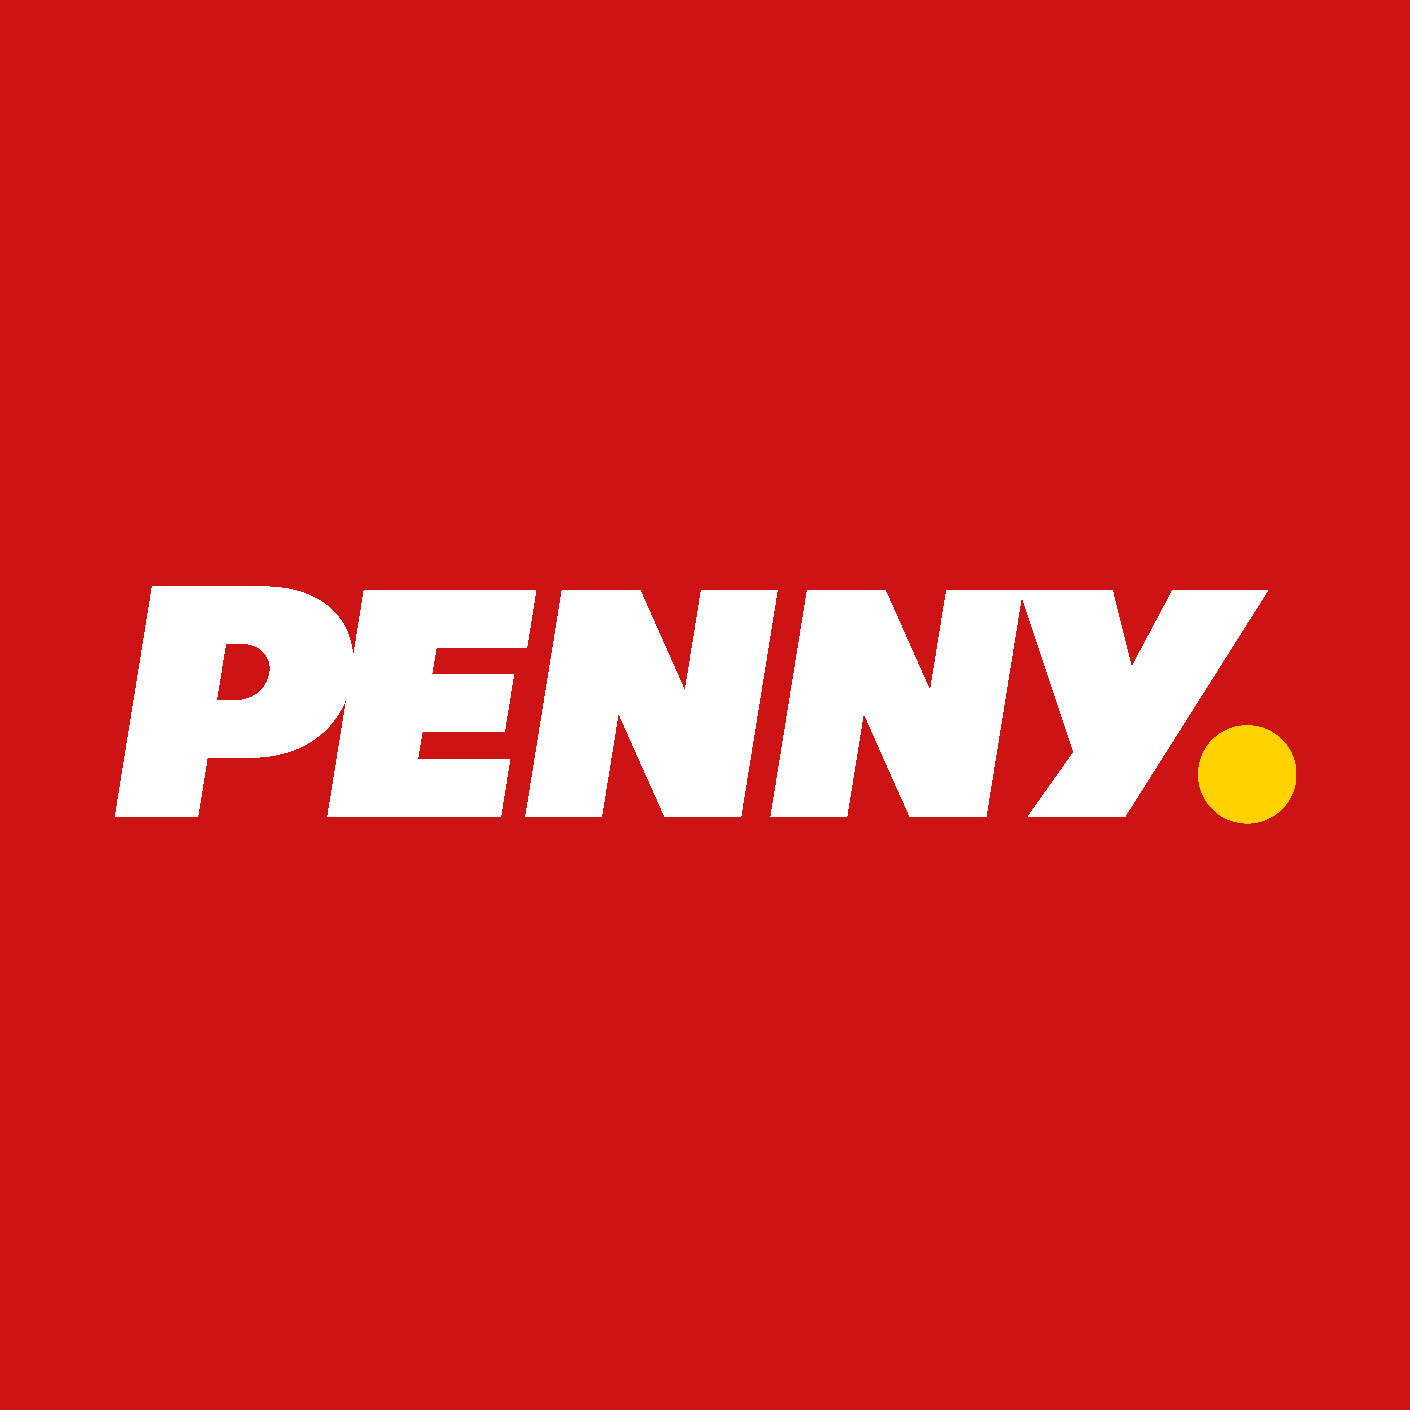 PENNY: nuovo logo per esprimere i proprii valori e investimenti pubblicitari in crescita a doppia cifra anche quest’anno